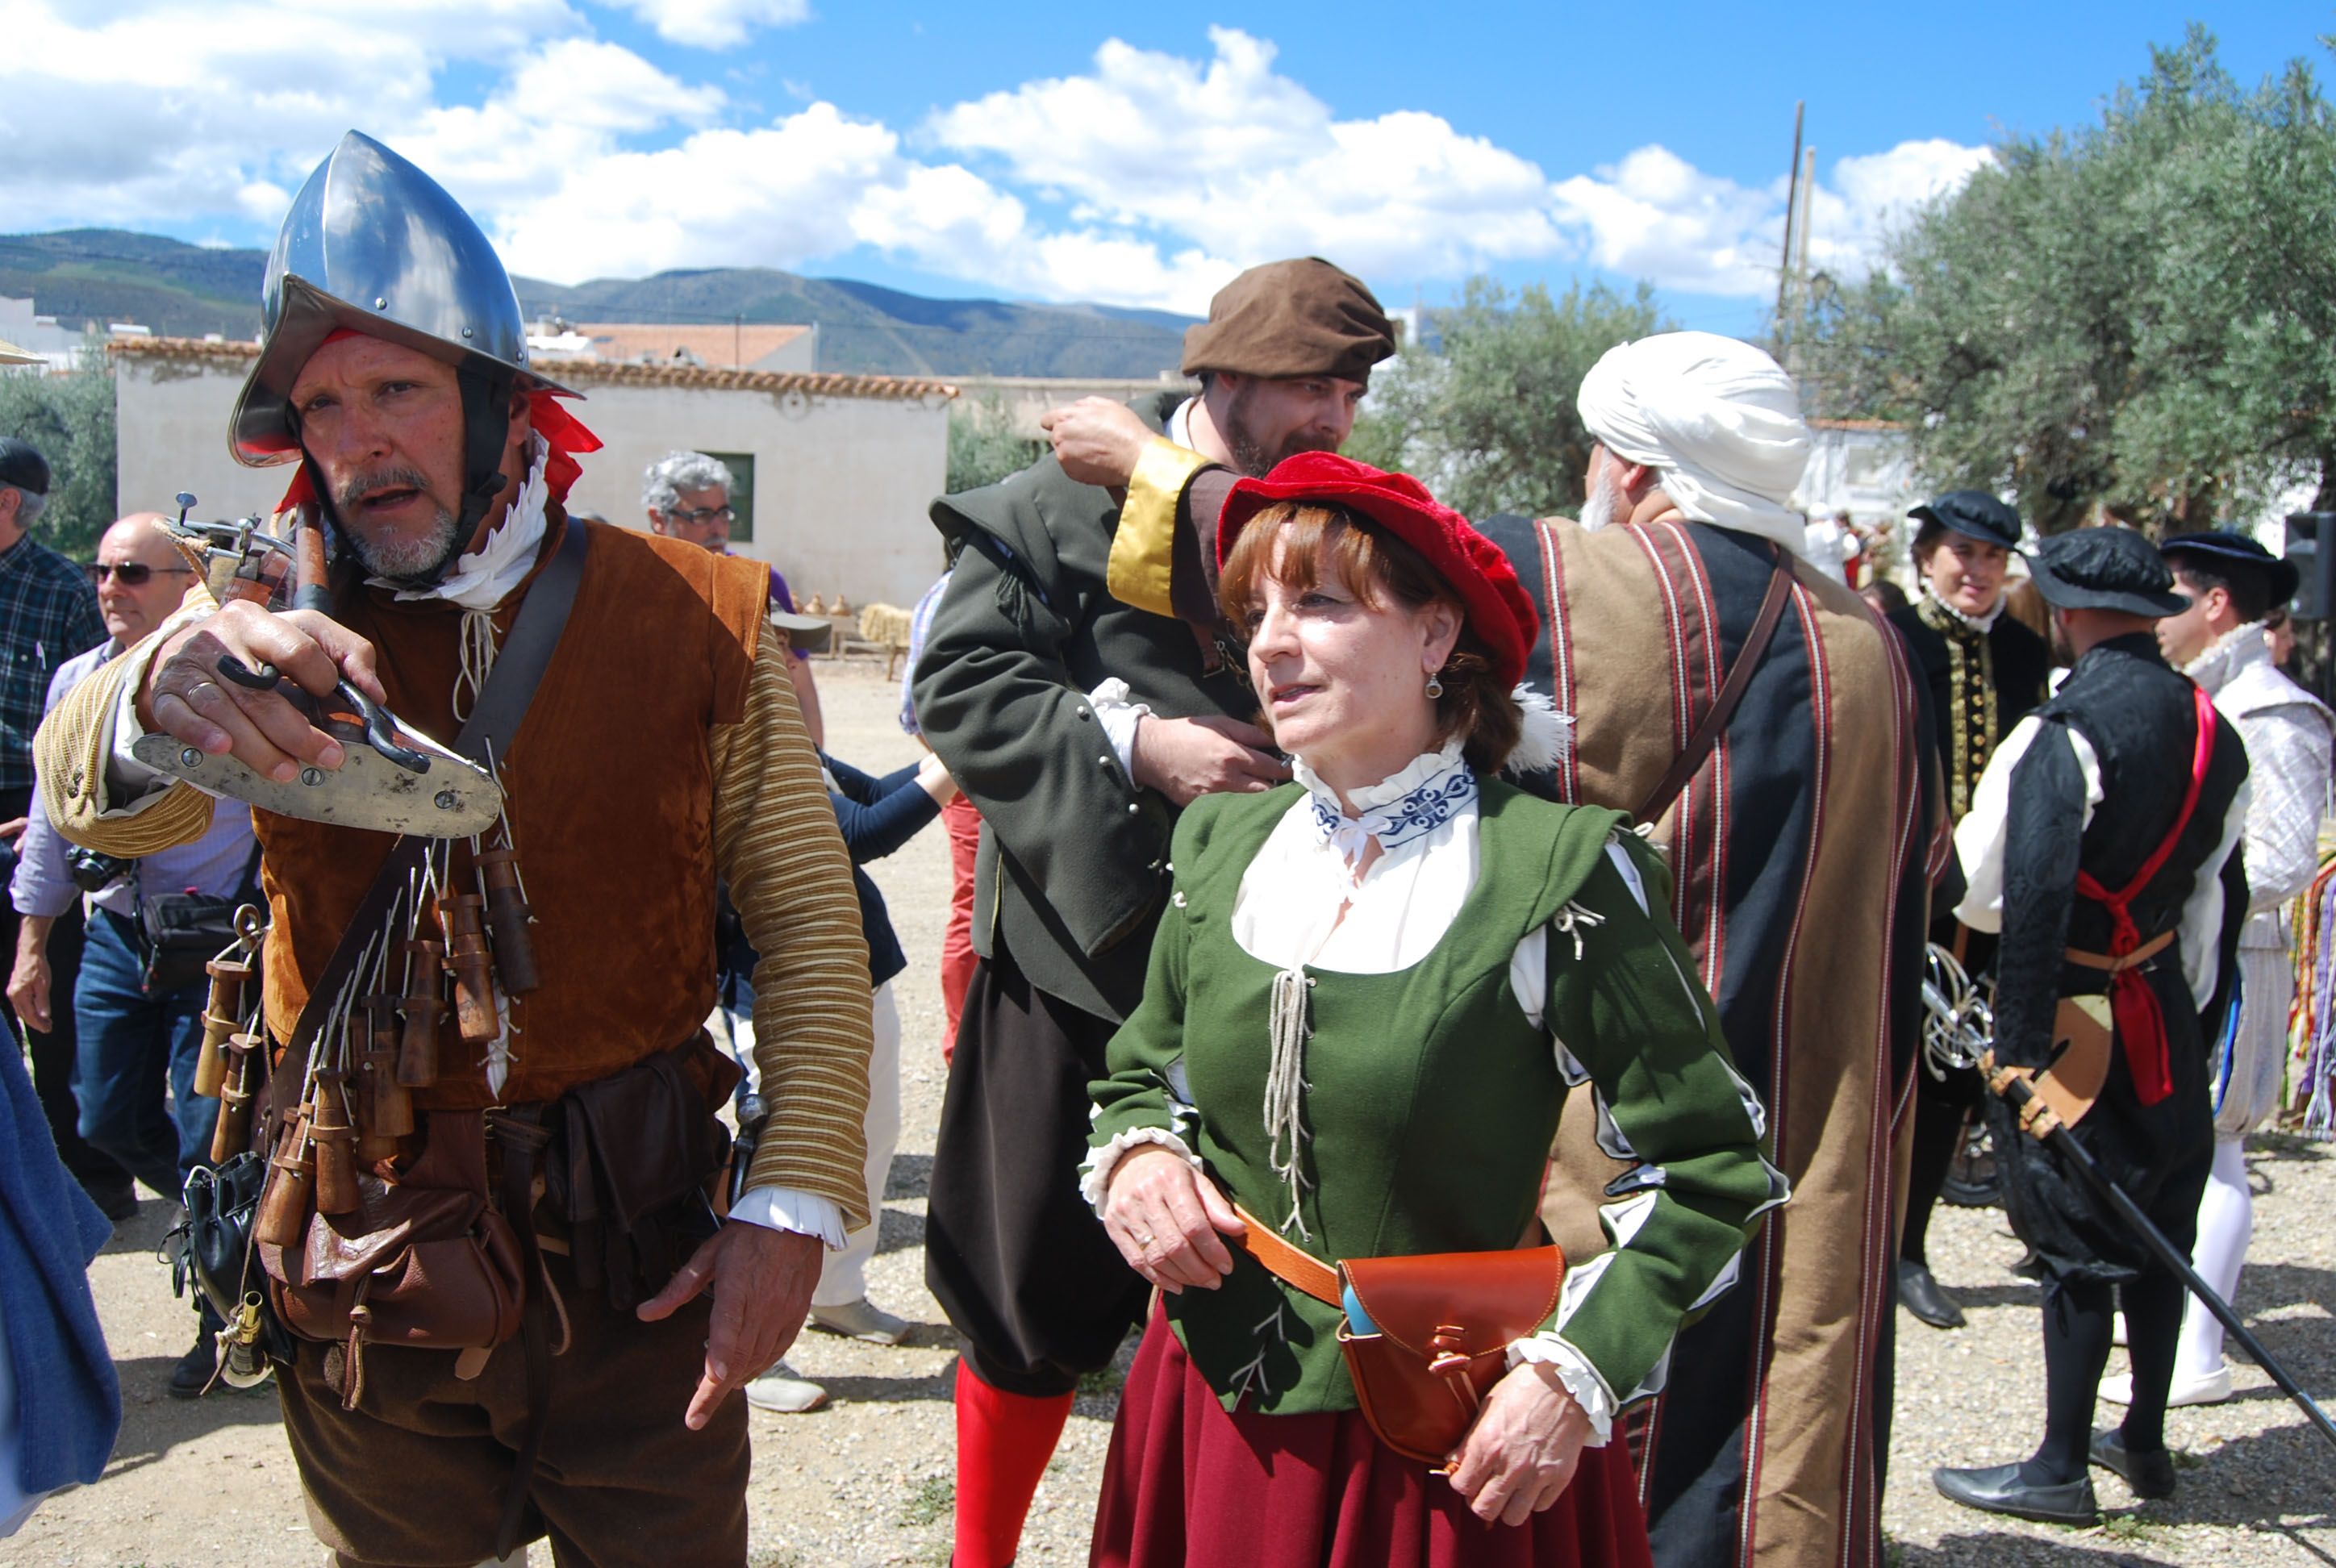 Participantes recreando los ropajes y vestimentas del siglo XVI. © Fotografía: Mª Isabel Muñoz